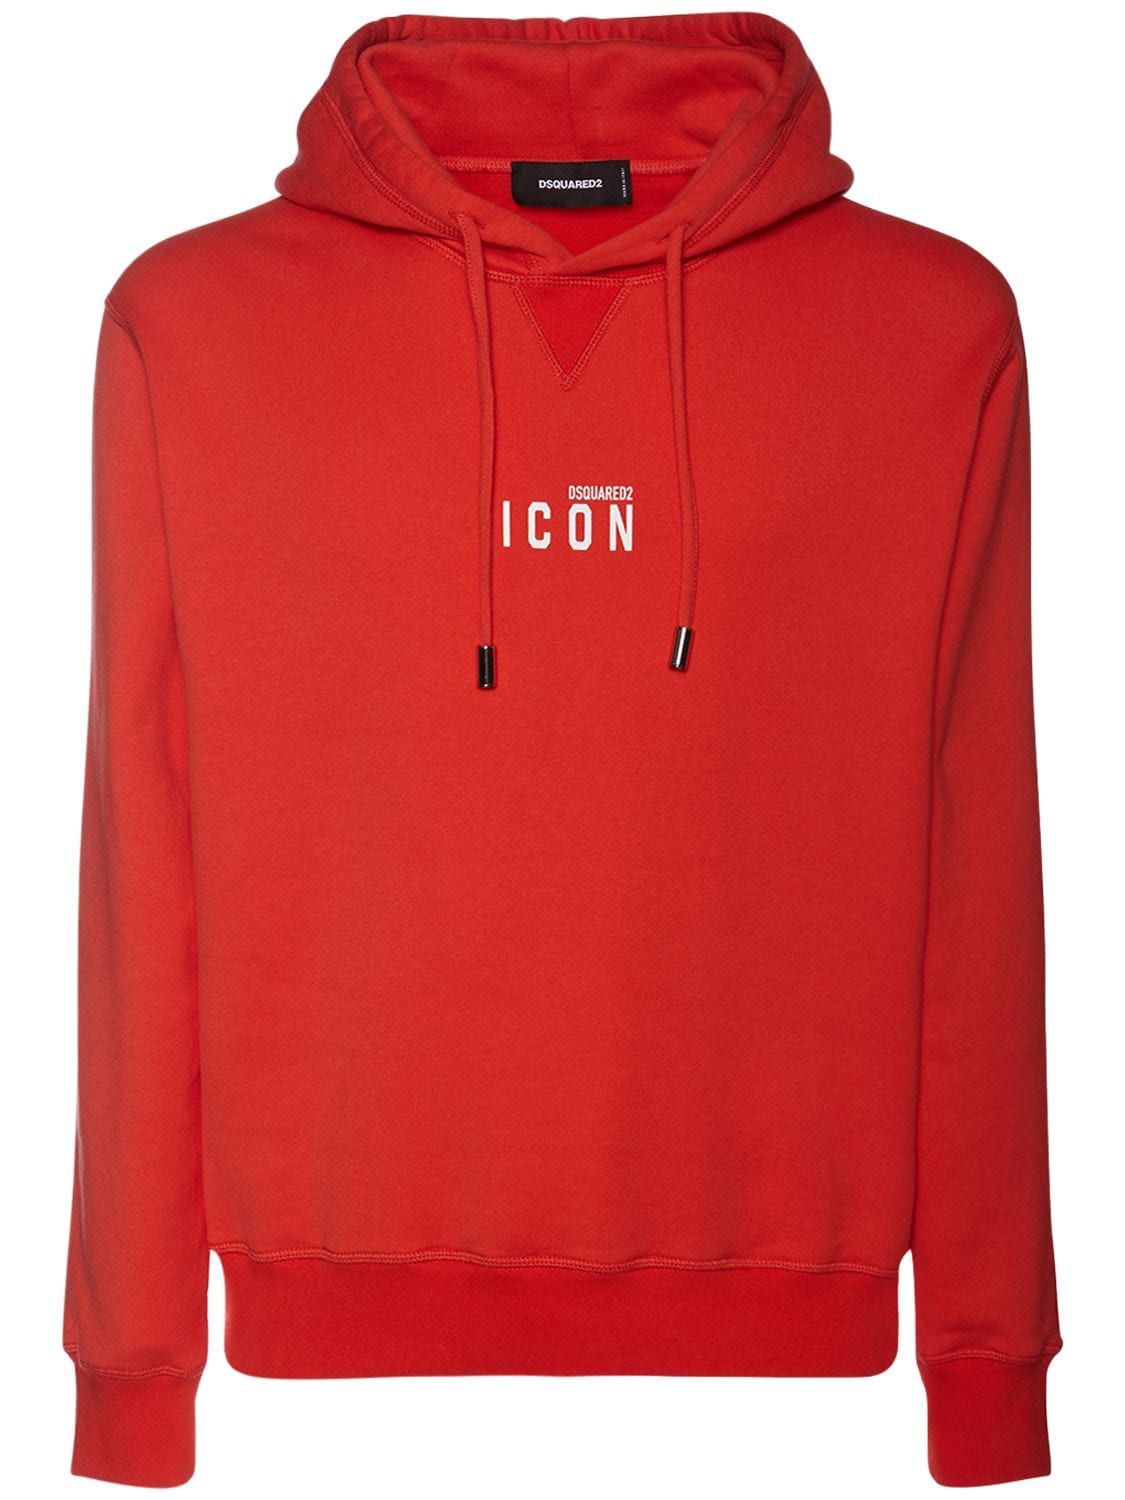 Icon Hooded Sweatshirt – MEN > CLOTHING > SWEATSHIRTS